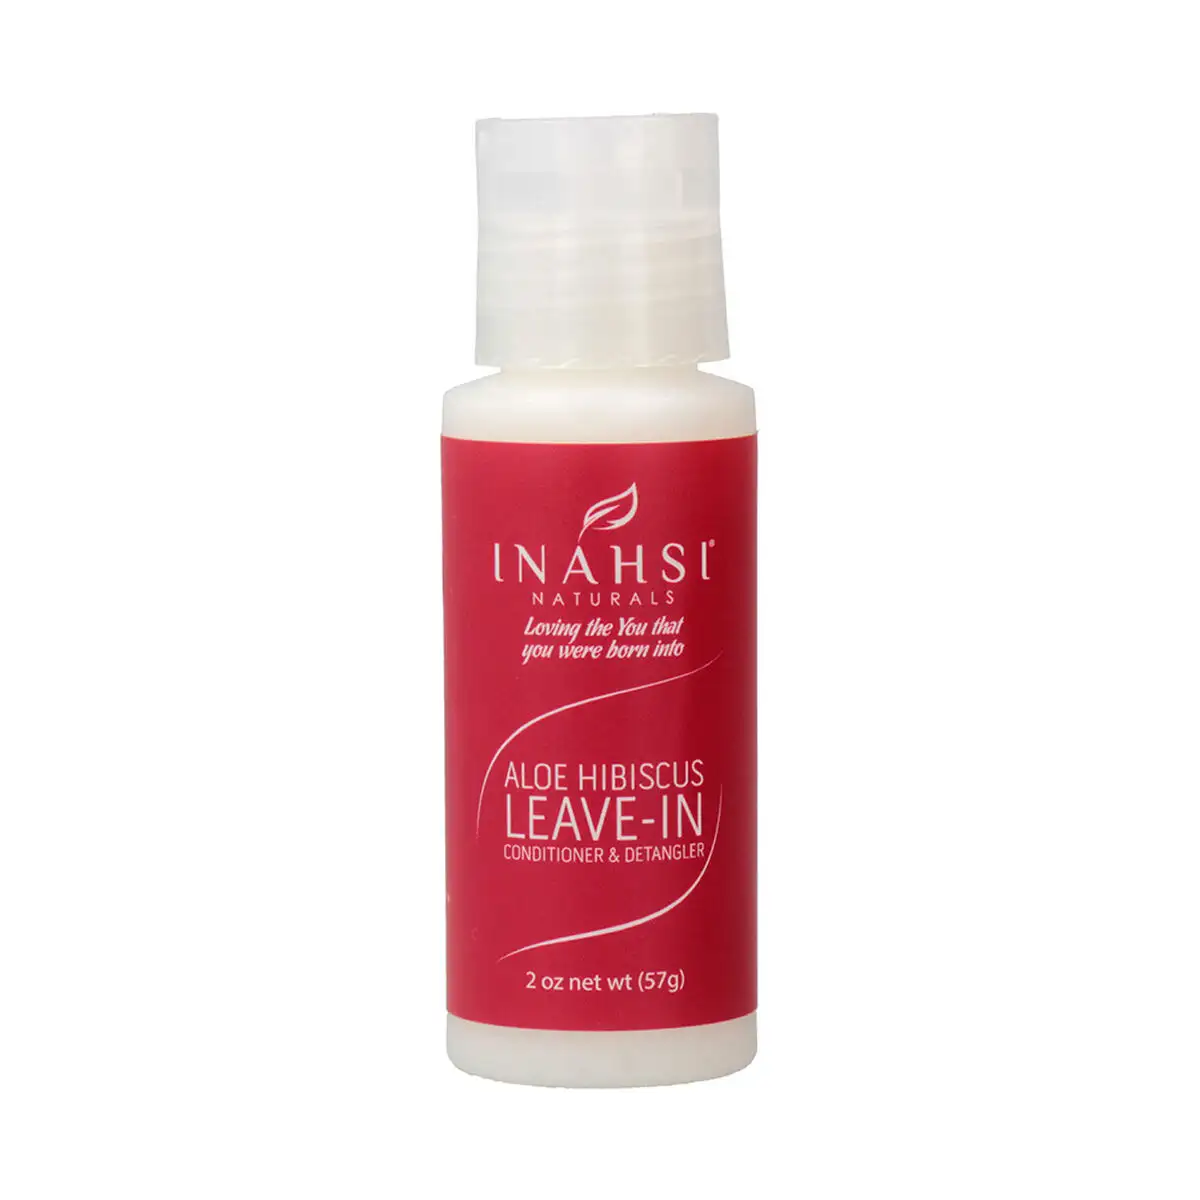 Apres shampooing inahsi hibiscus leave in detangler 57 g _4854. DIAYTAR SENEGAL - L'Art du Shopping Sublime. Naviguez à travers notre catalogue et choisissez parmi des produits qui ajoutent une touche raffinée à votre vie quotidienne.